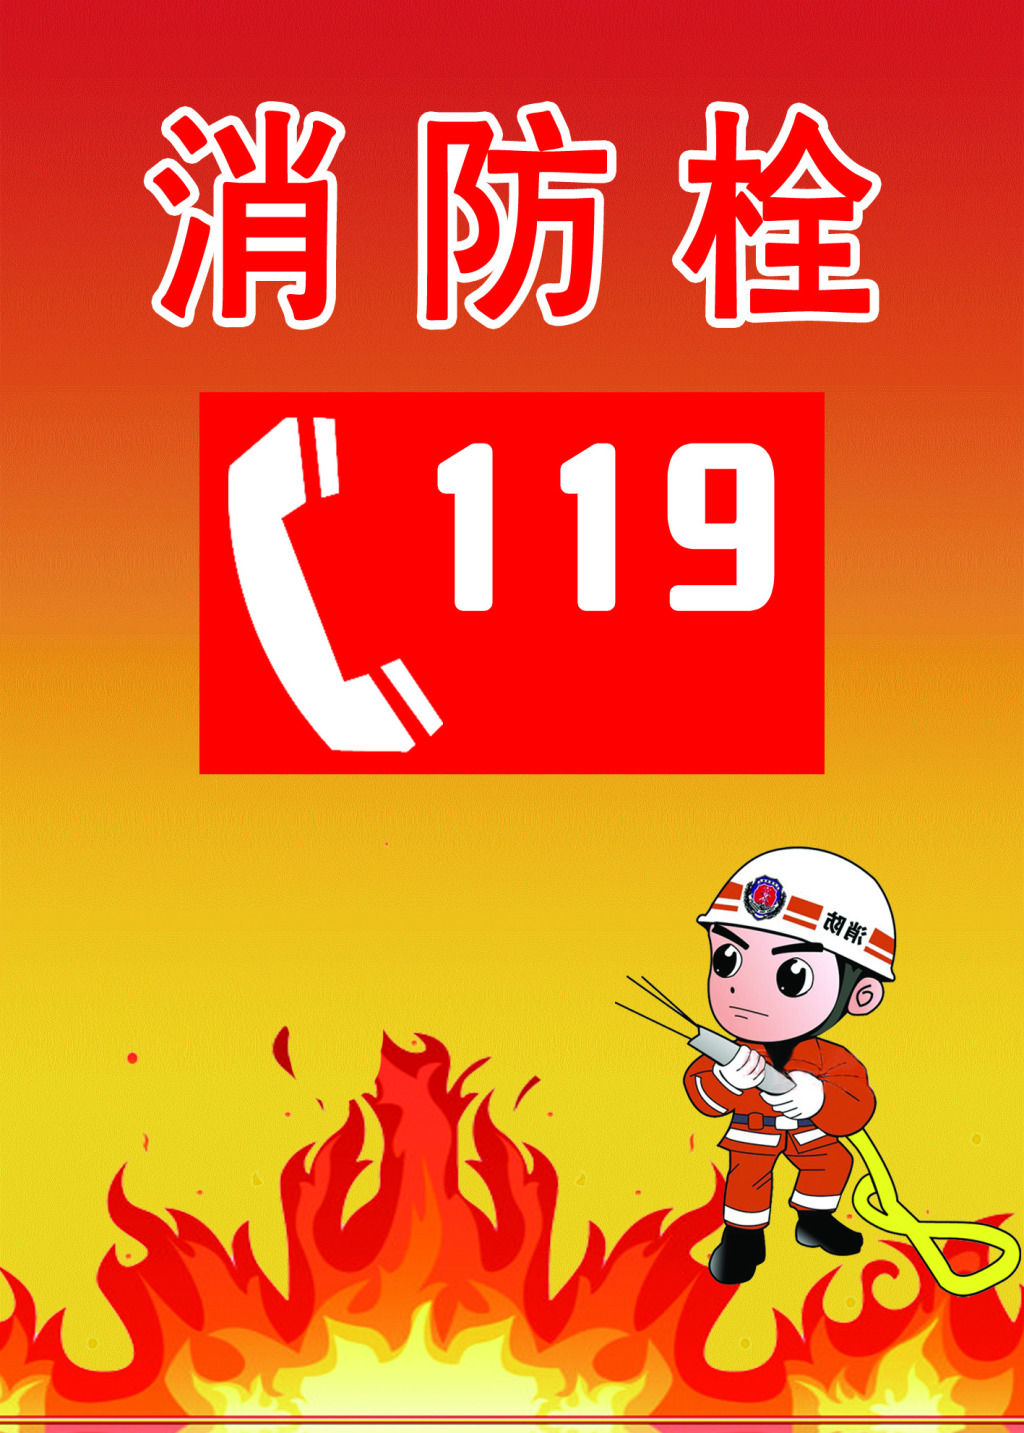 119(中國大陸消防報警電話)